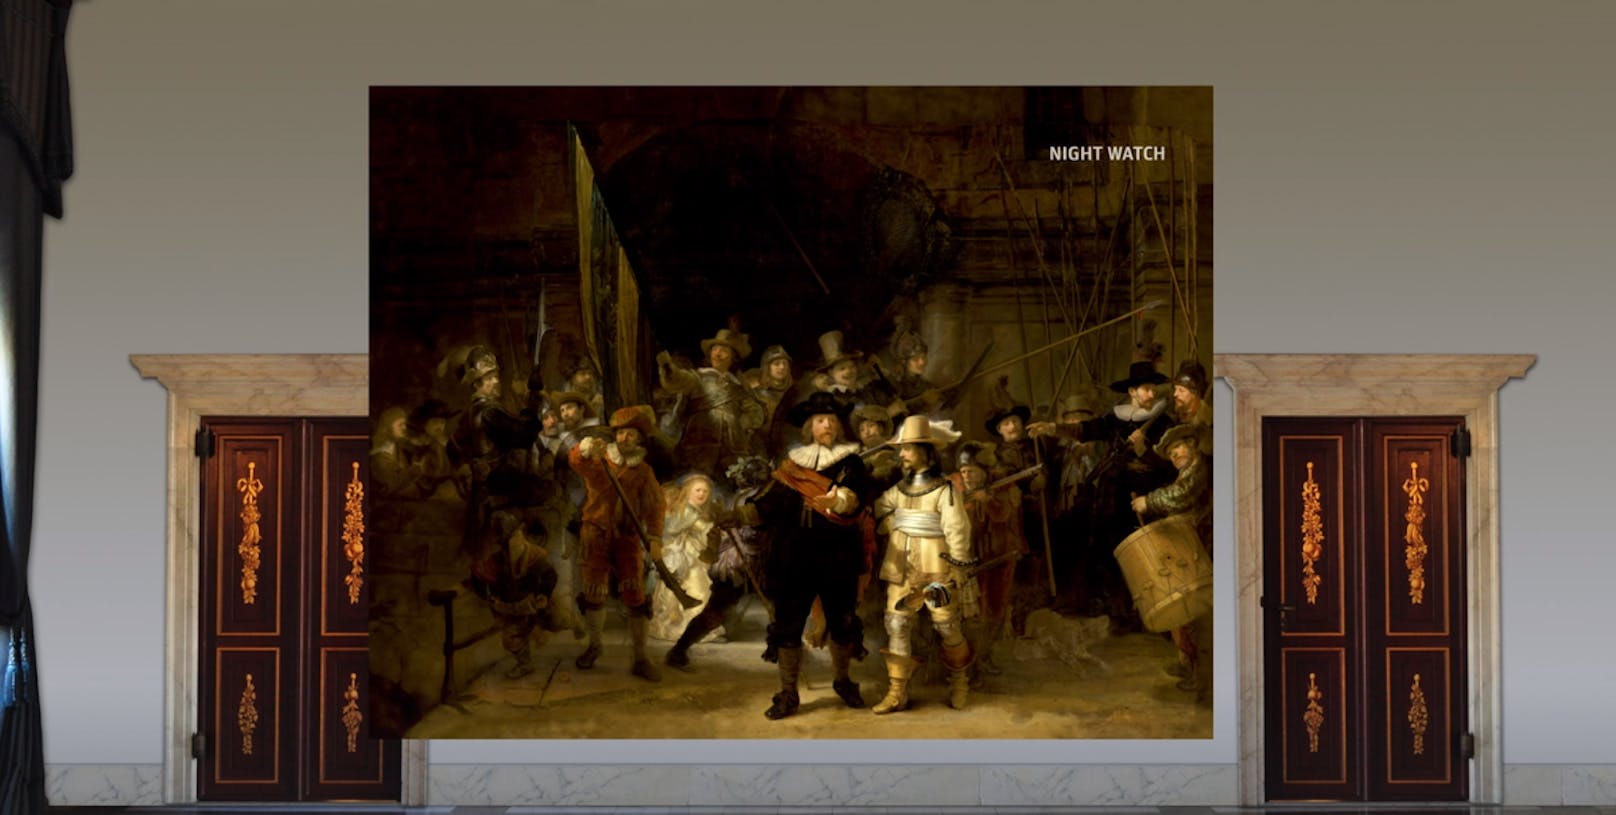 So sieht das Rembrandt-Gemälde "Die Nachtwache" aus – oder so ähnlich sah es zumindest vor rund 400 Jahren aus.